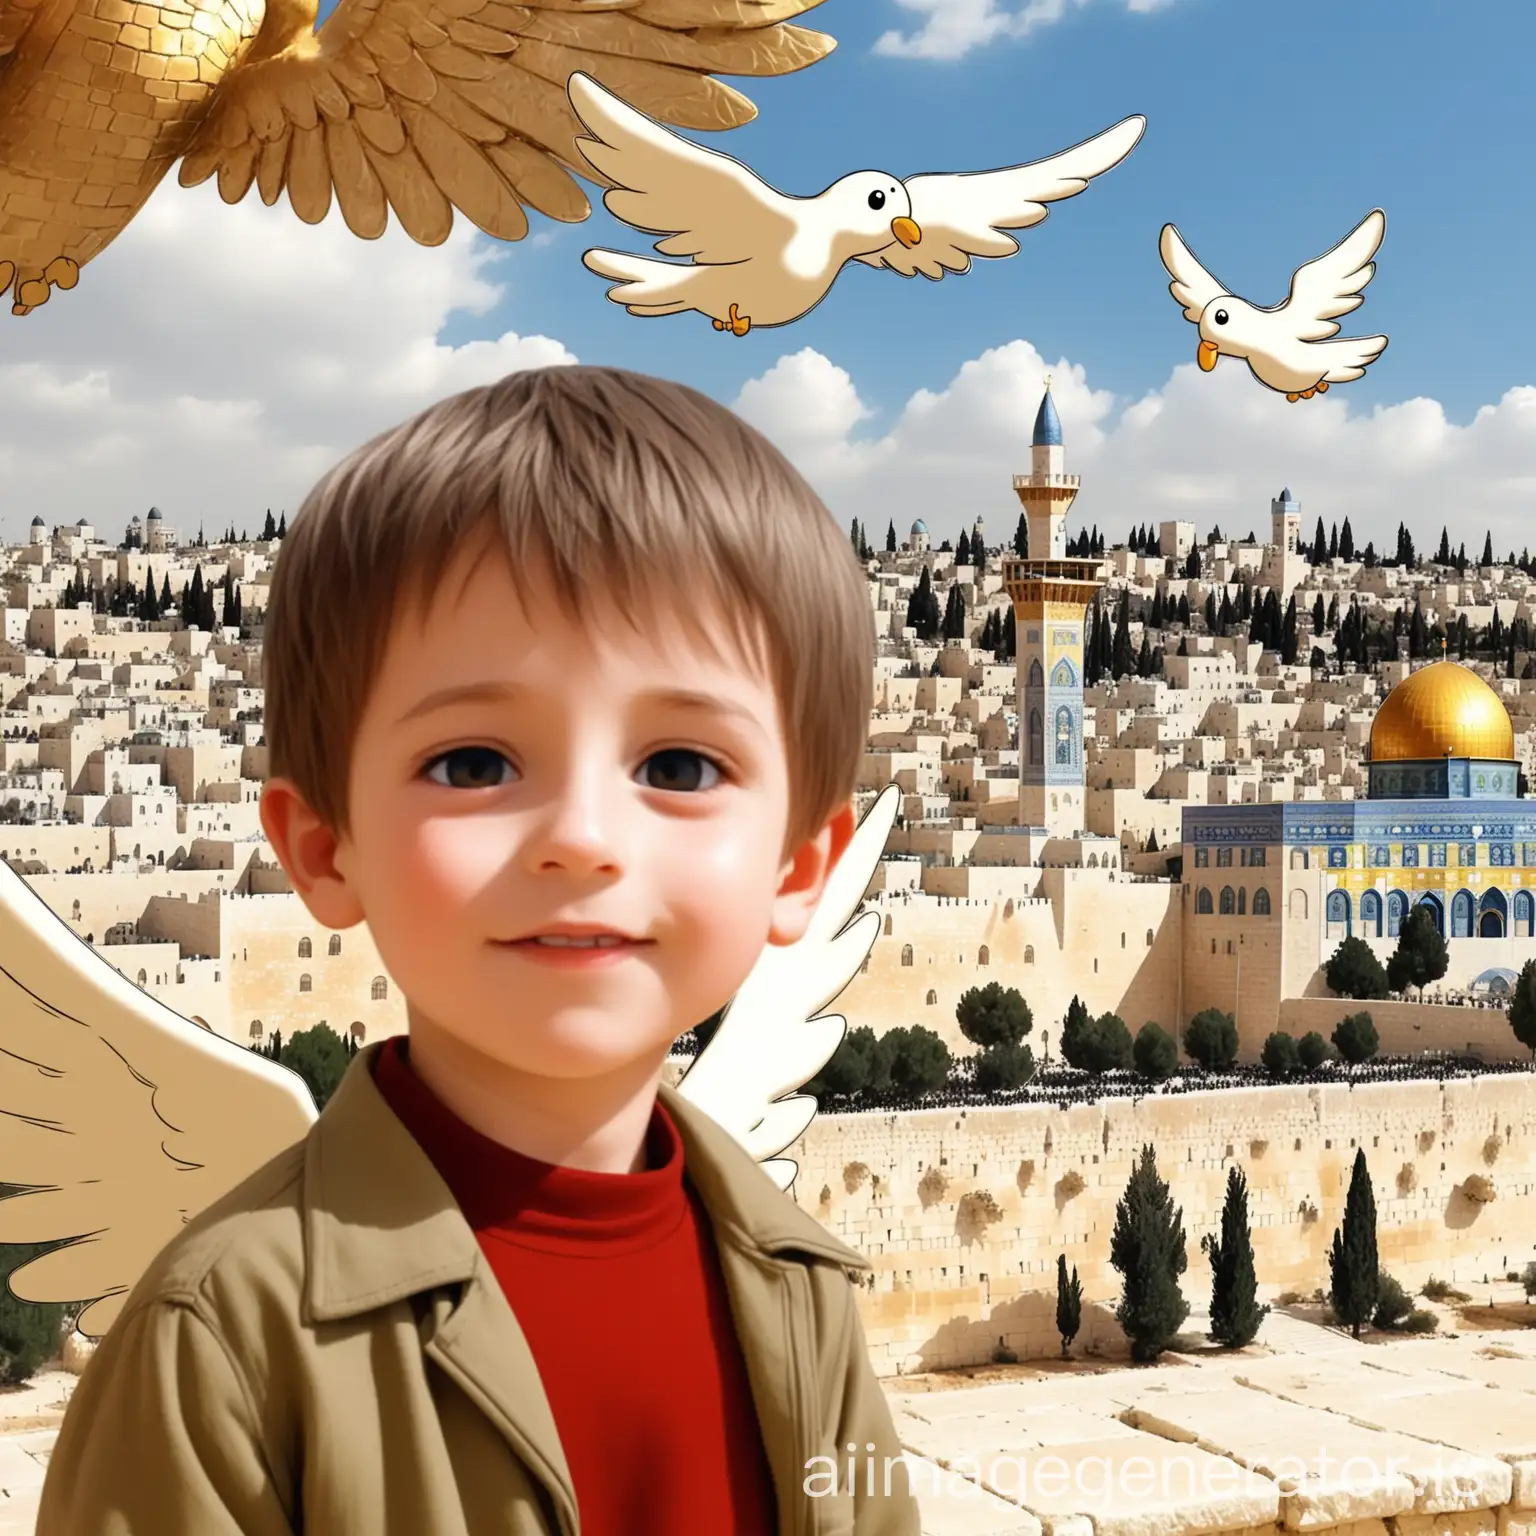 Child-with-Angel-Wings-in-Jerusalem-Cartoon-Scene